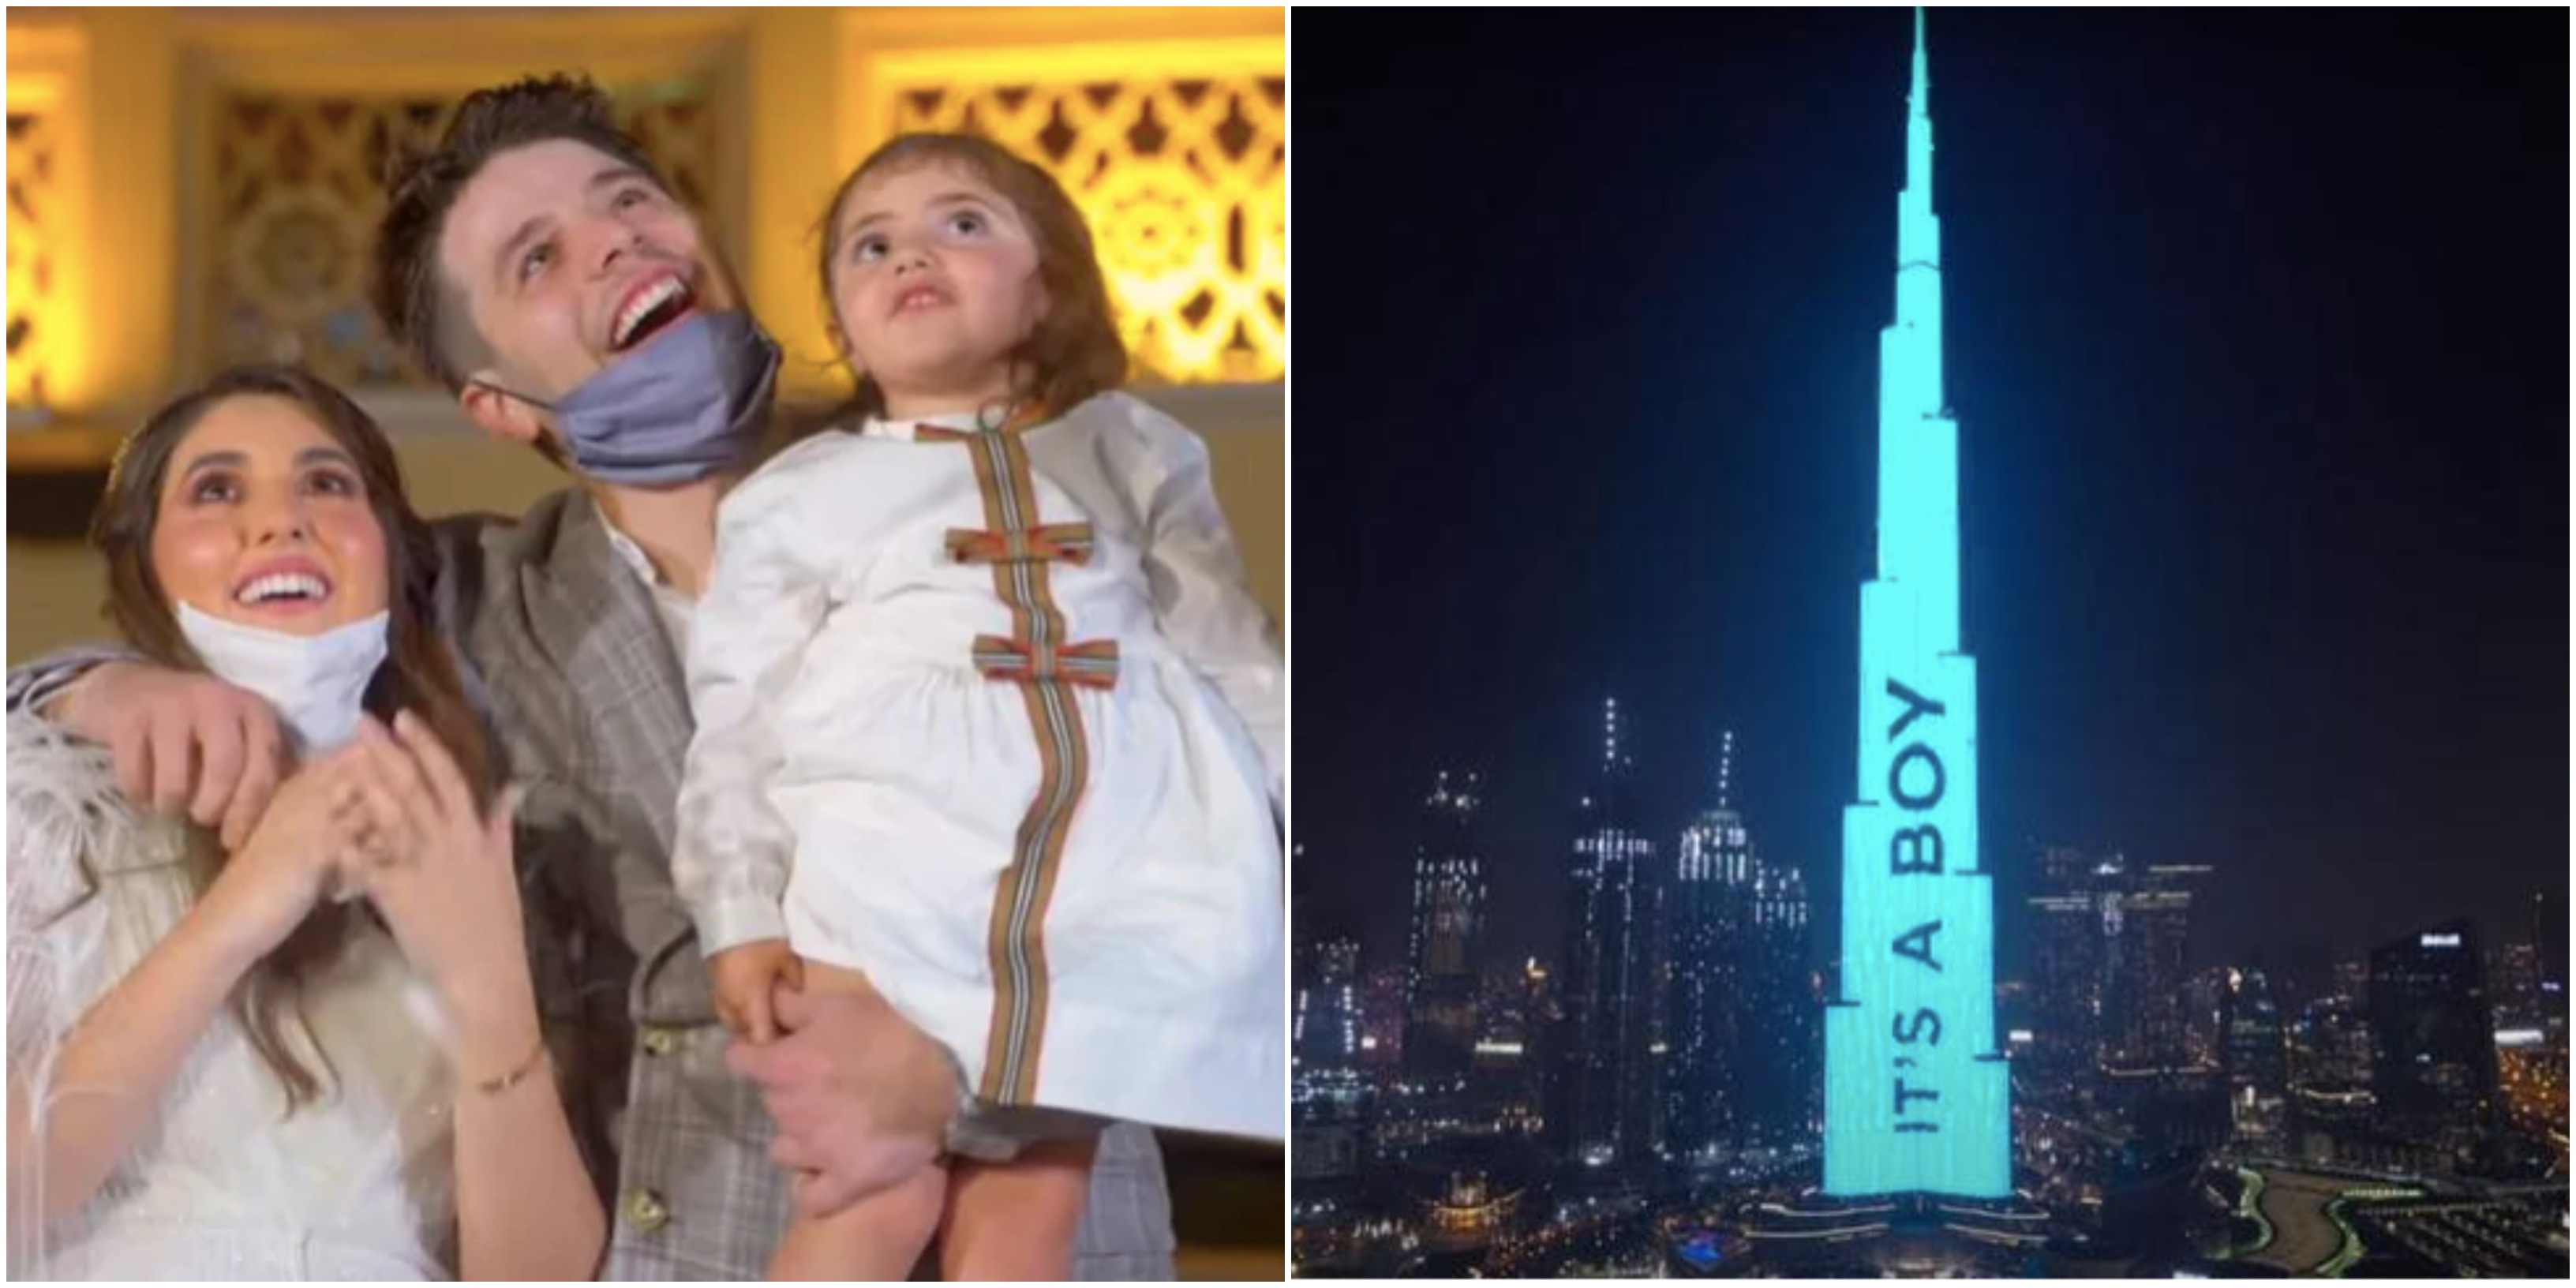 [VIDEO] Bintang Youtube Arab Bayar RM540k Umum Jantina Anak Di Bangunan Tertinggi Dunia